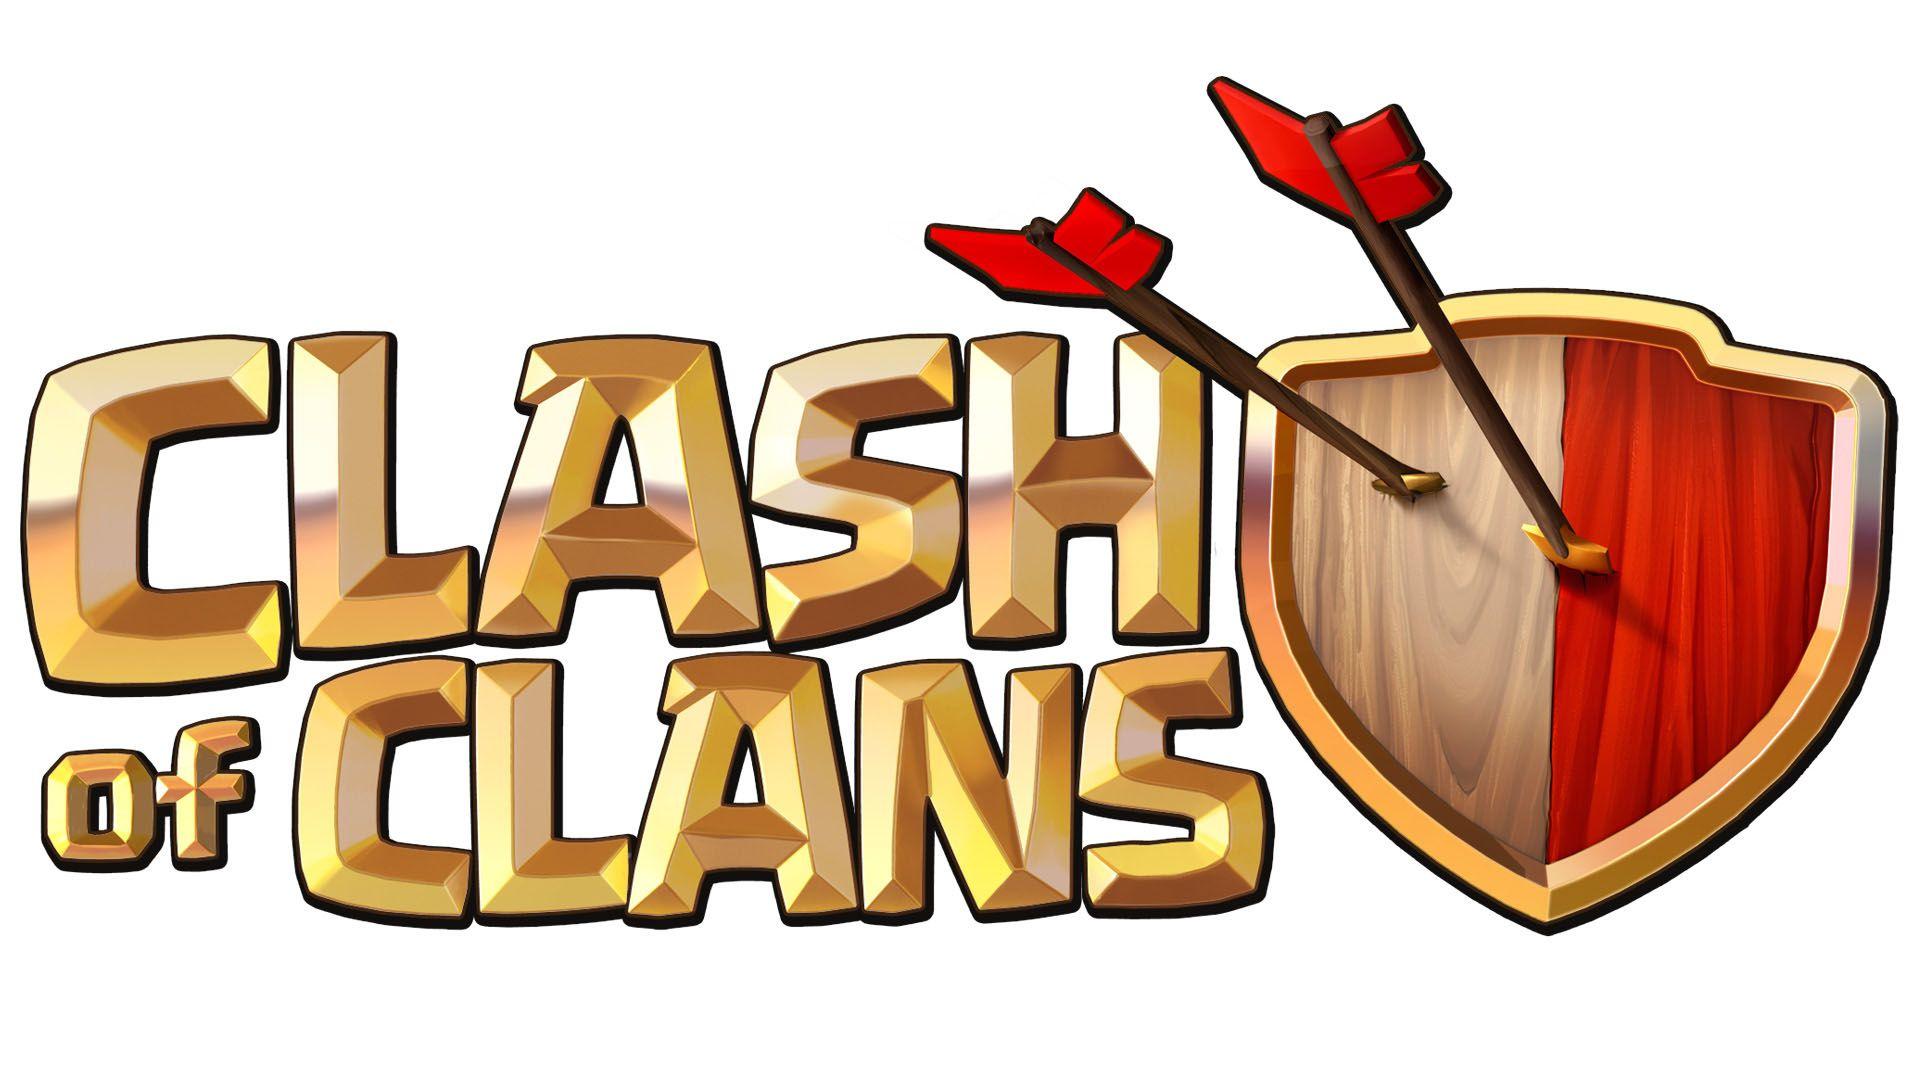 HD Clan Logo - Clash of Clans Logo Wallpaper 47419 1920x1080px